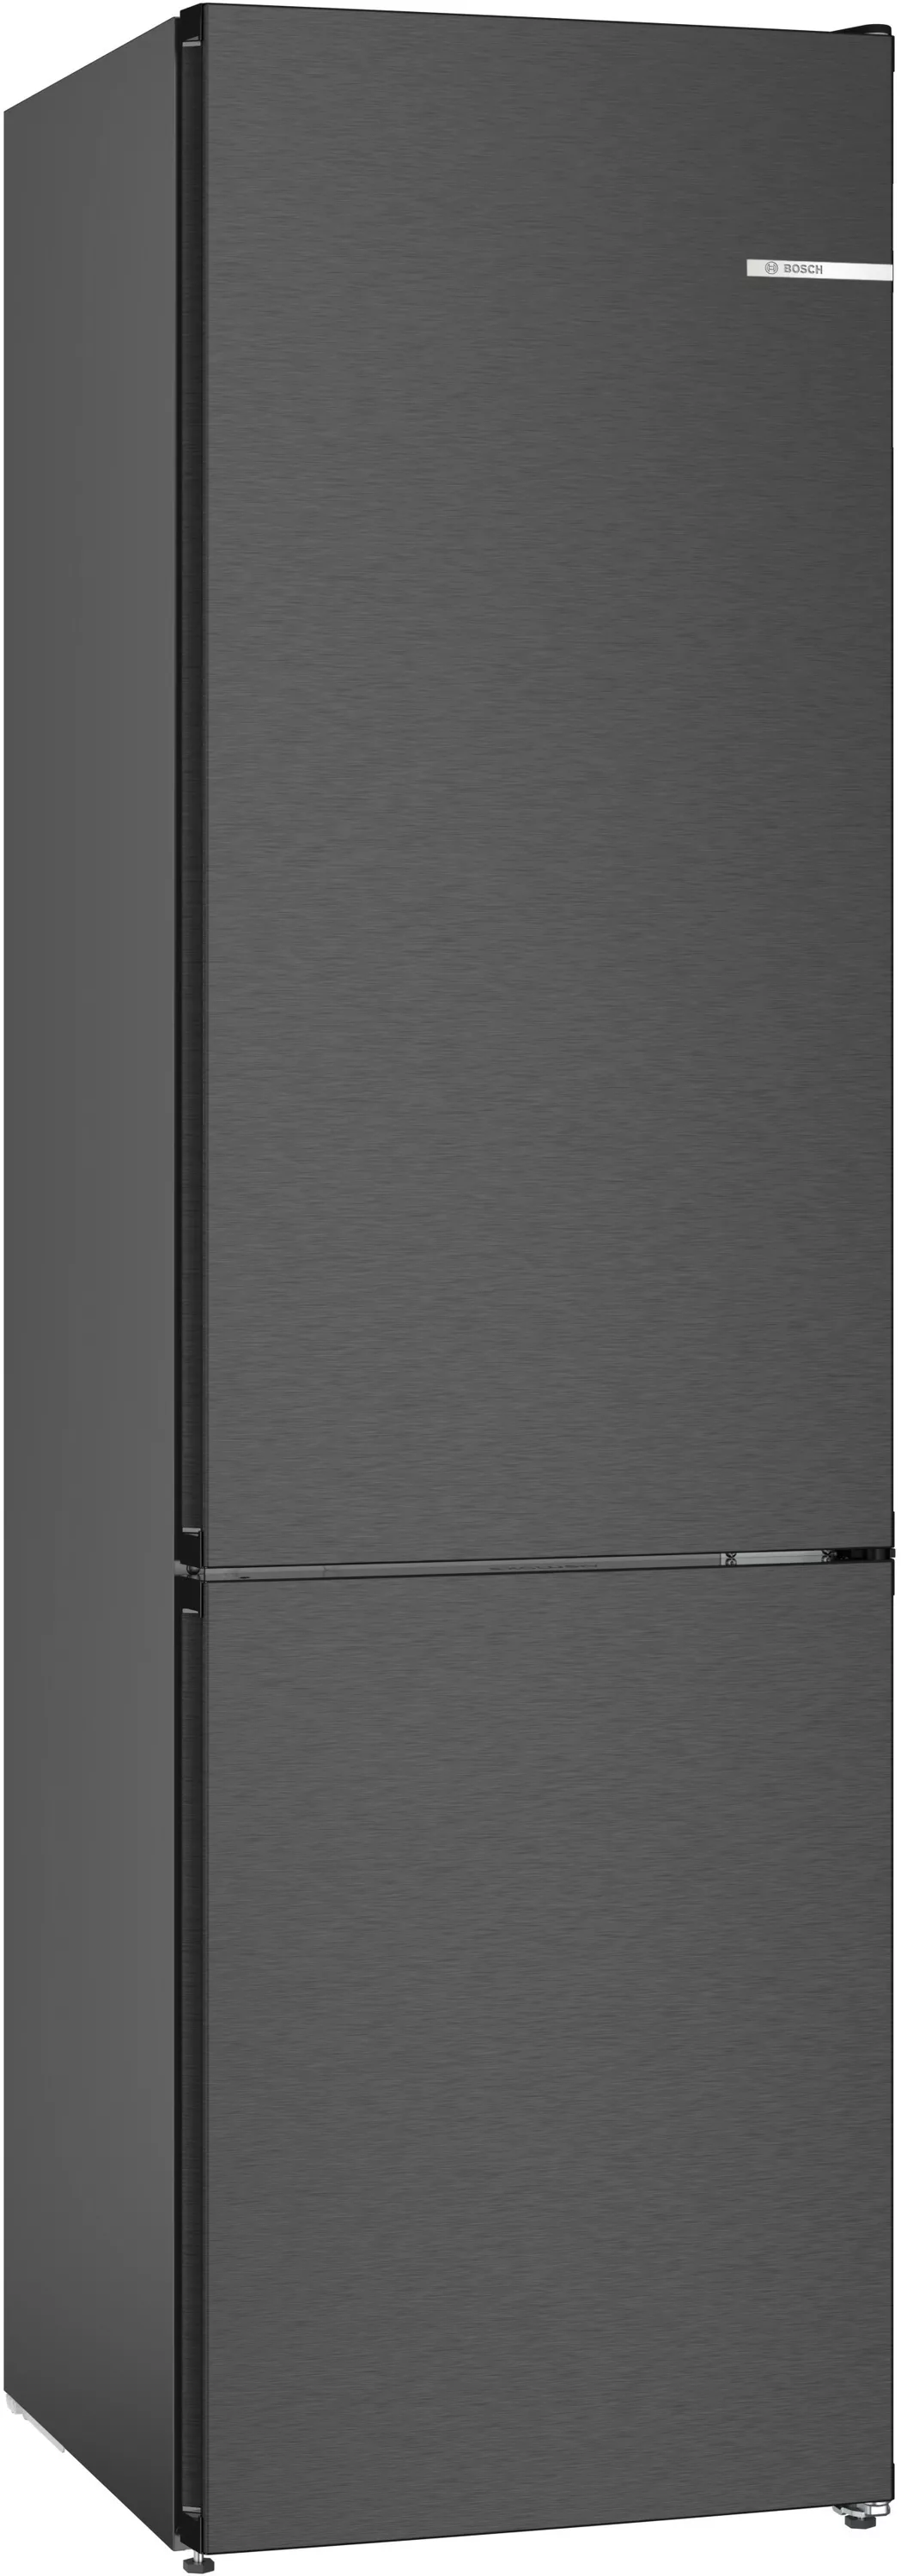 Bosch Serie 4, Freistehende Kühl-Gefrier-Kombination mit Gefrierbereich unten, 203 x 60 cm, Edelstahl schwarz, KGN39EXCF